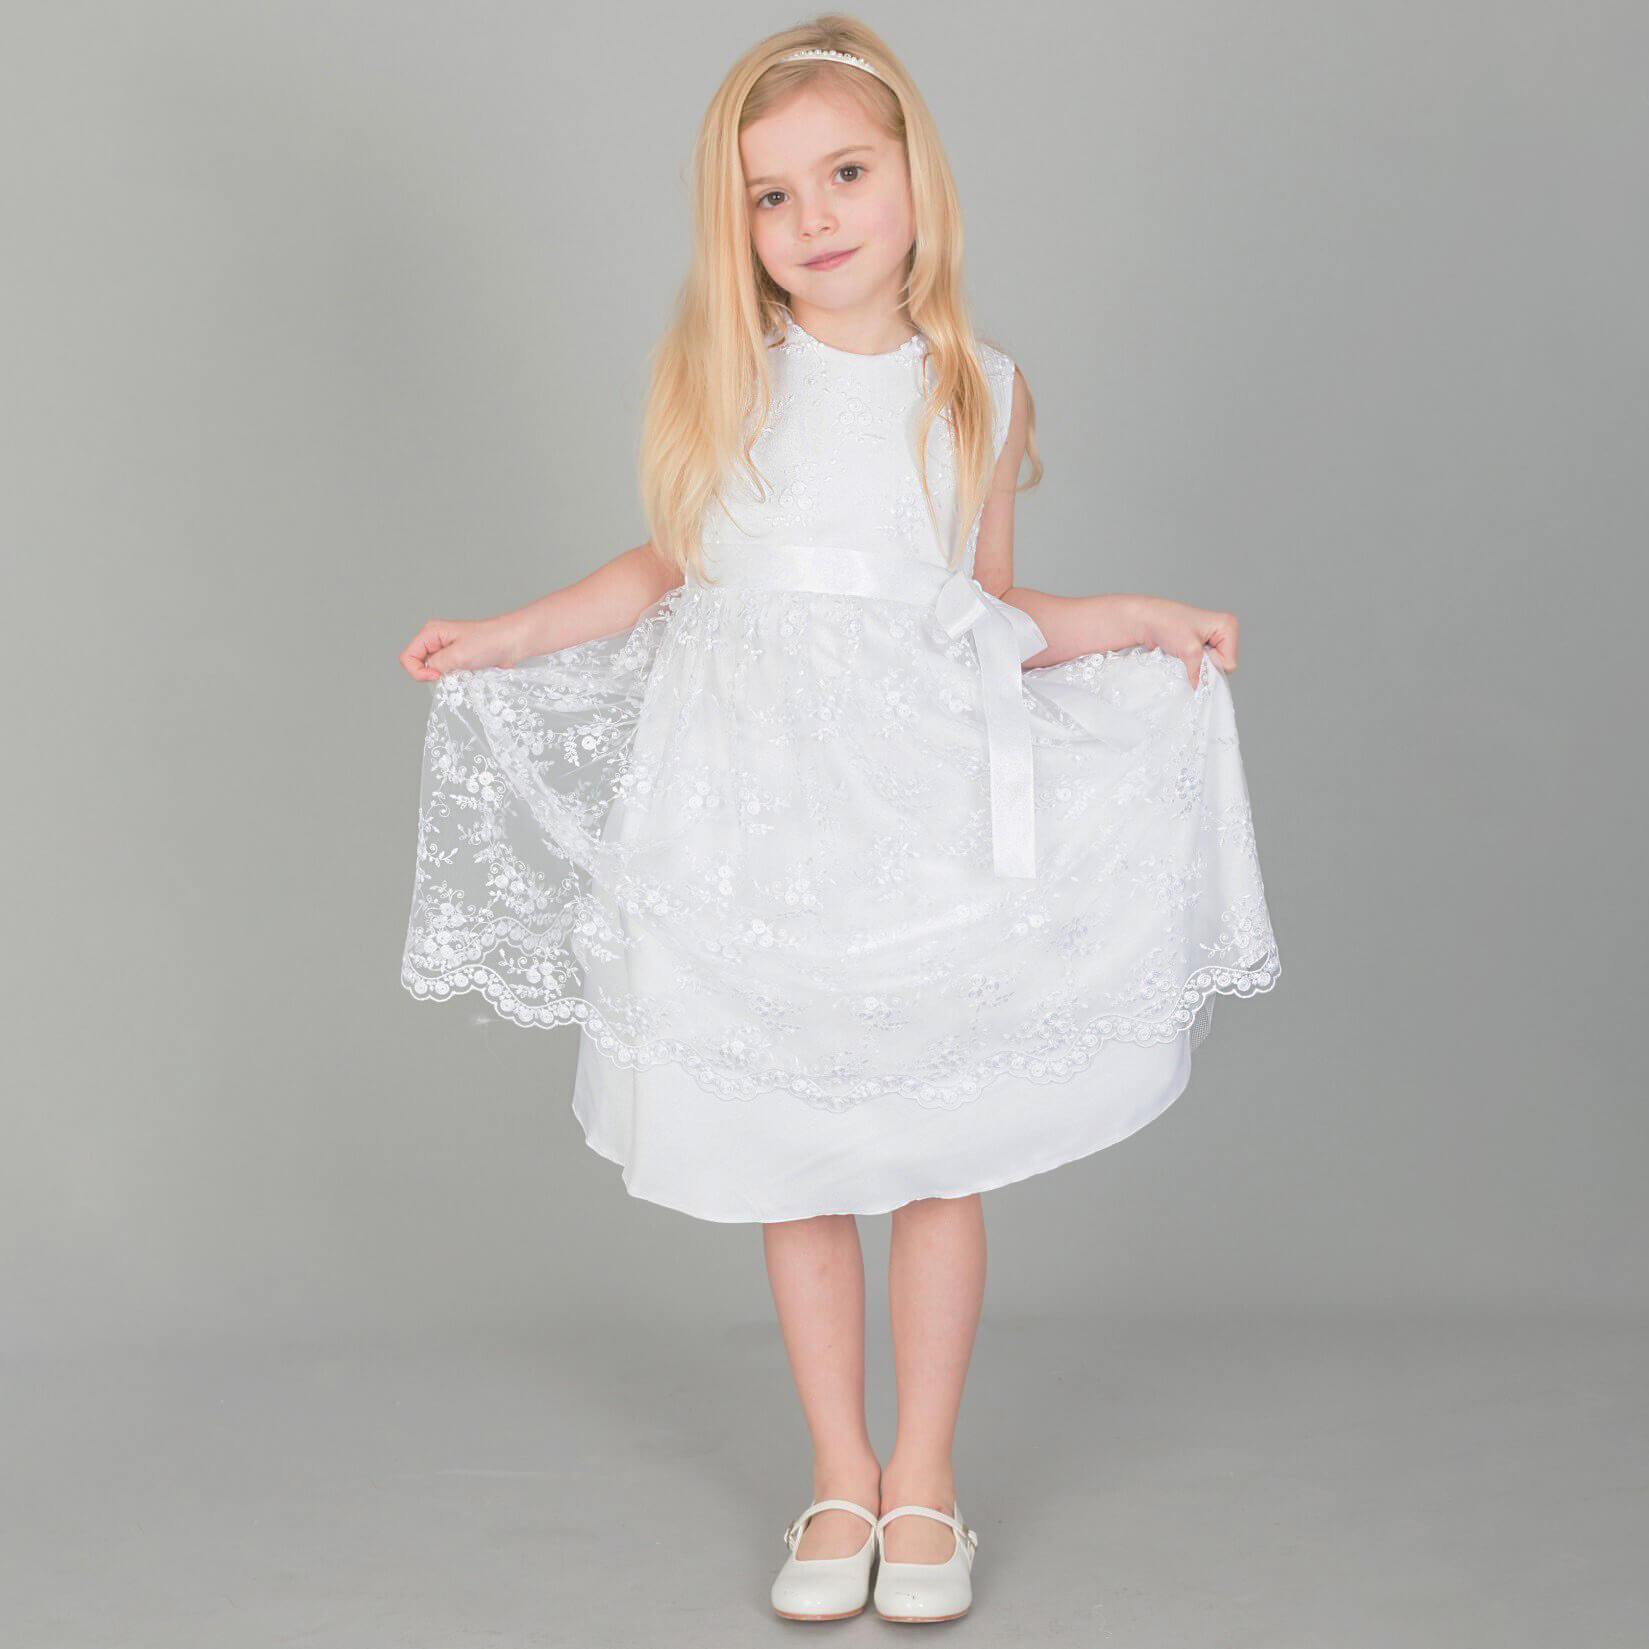 Girl wearing a white flower girl dress